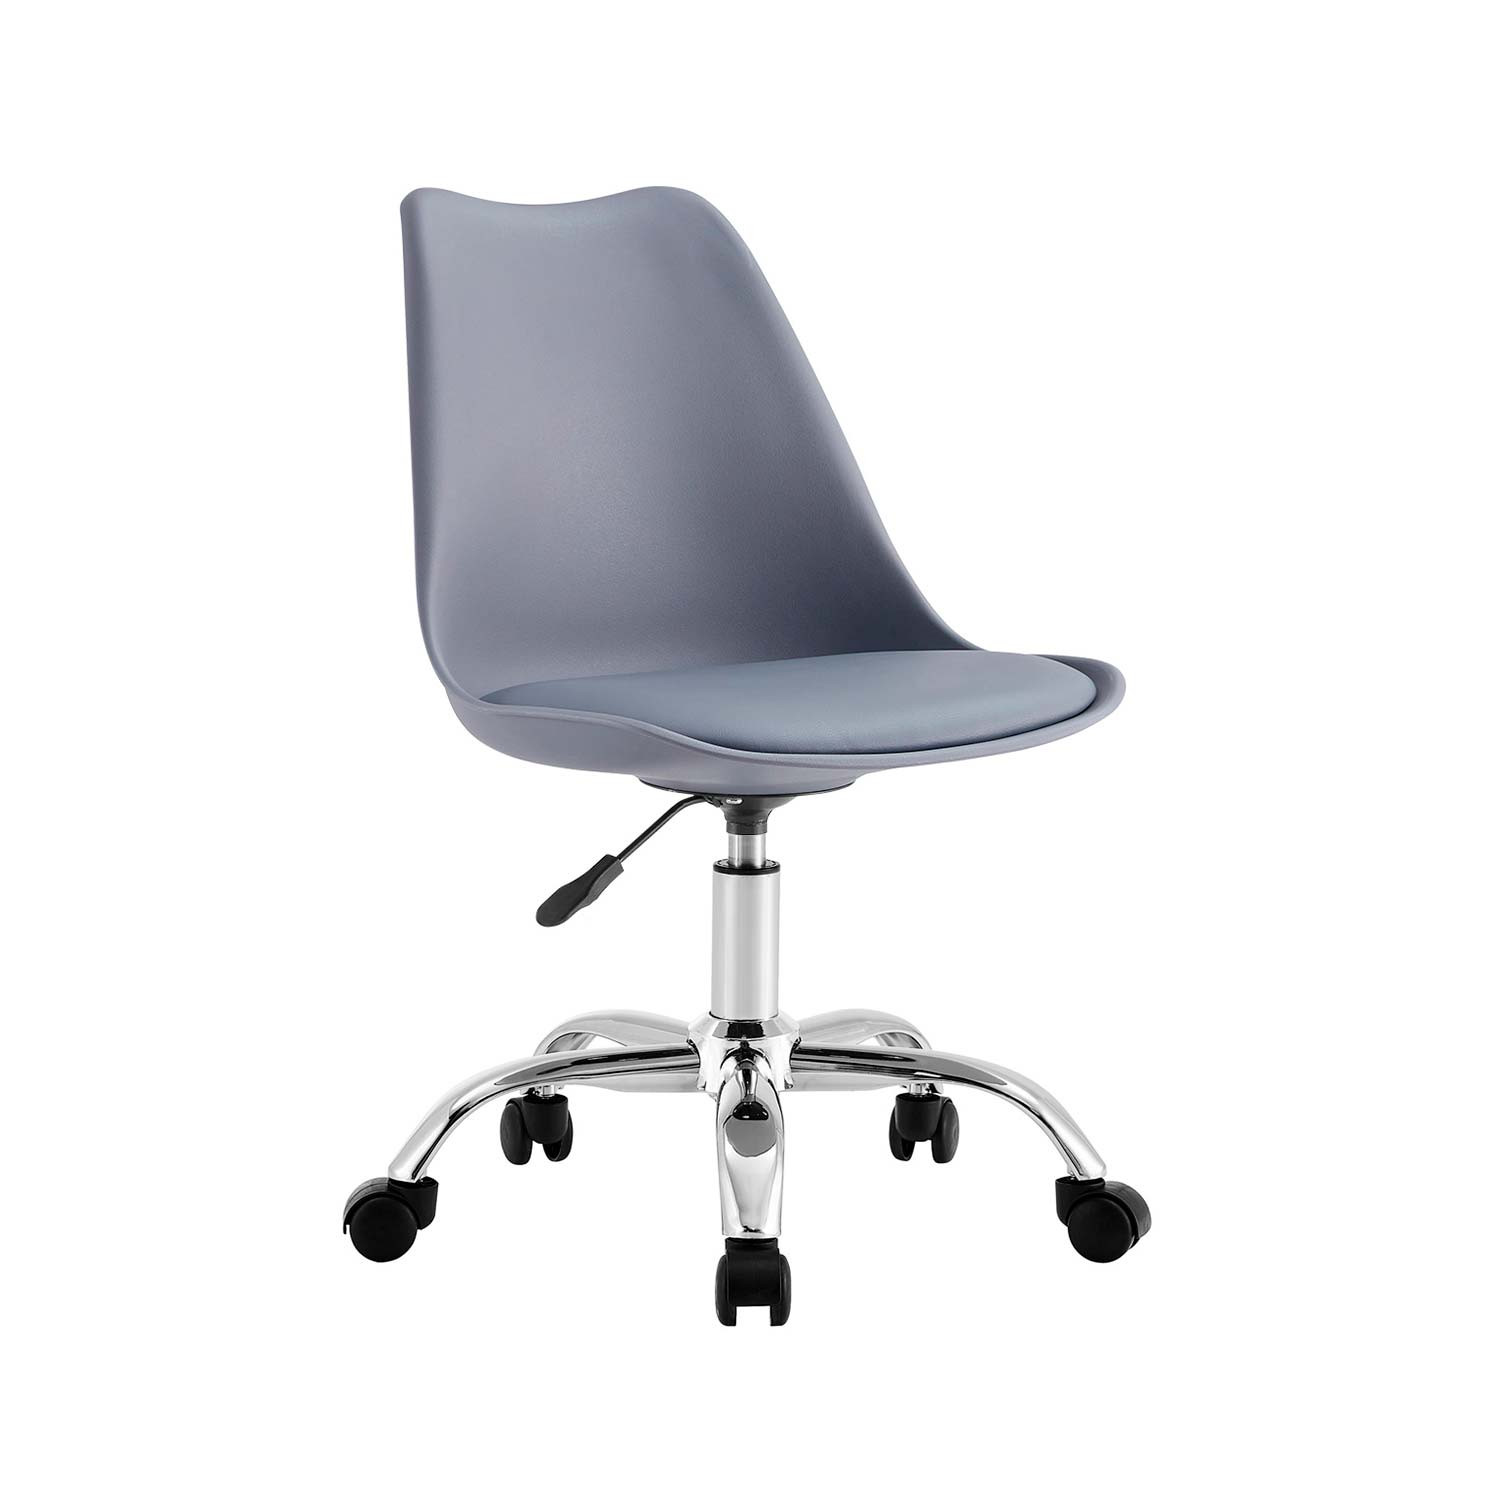 Christie silla de escritorio de color gris con ruedas